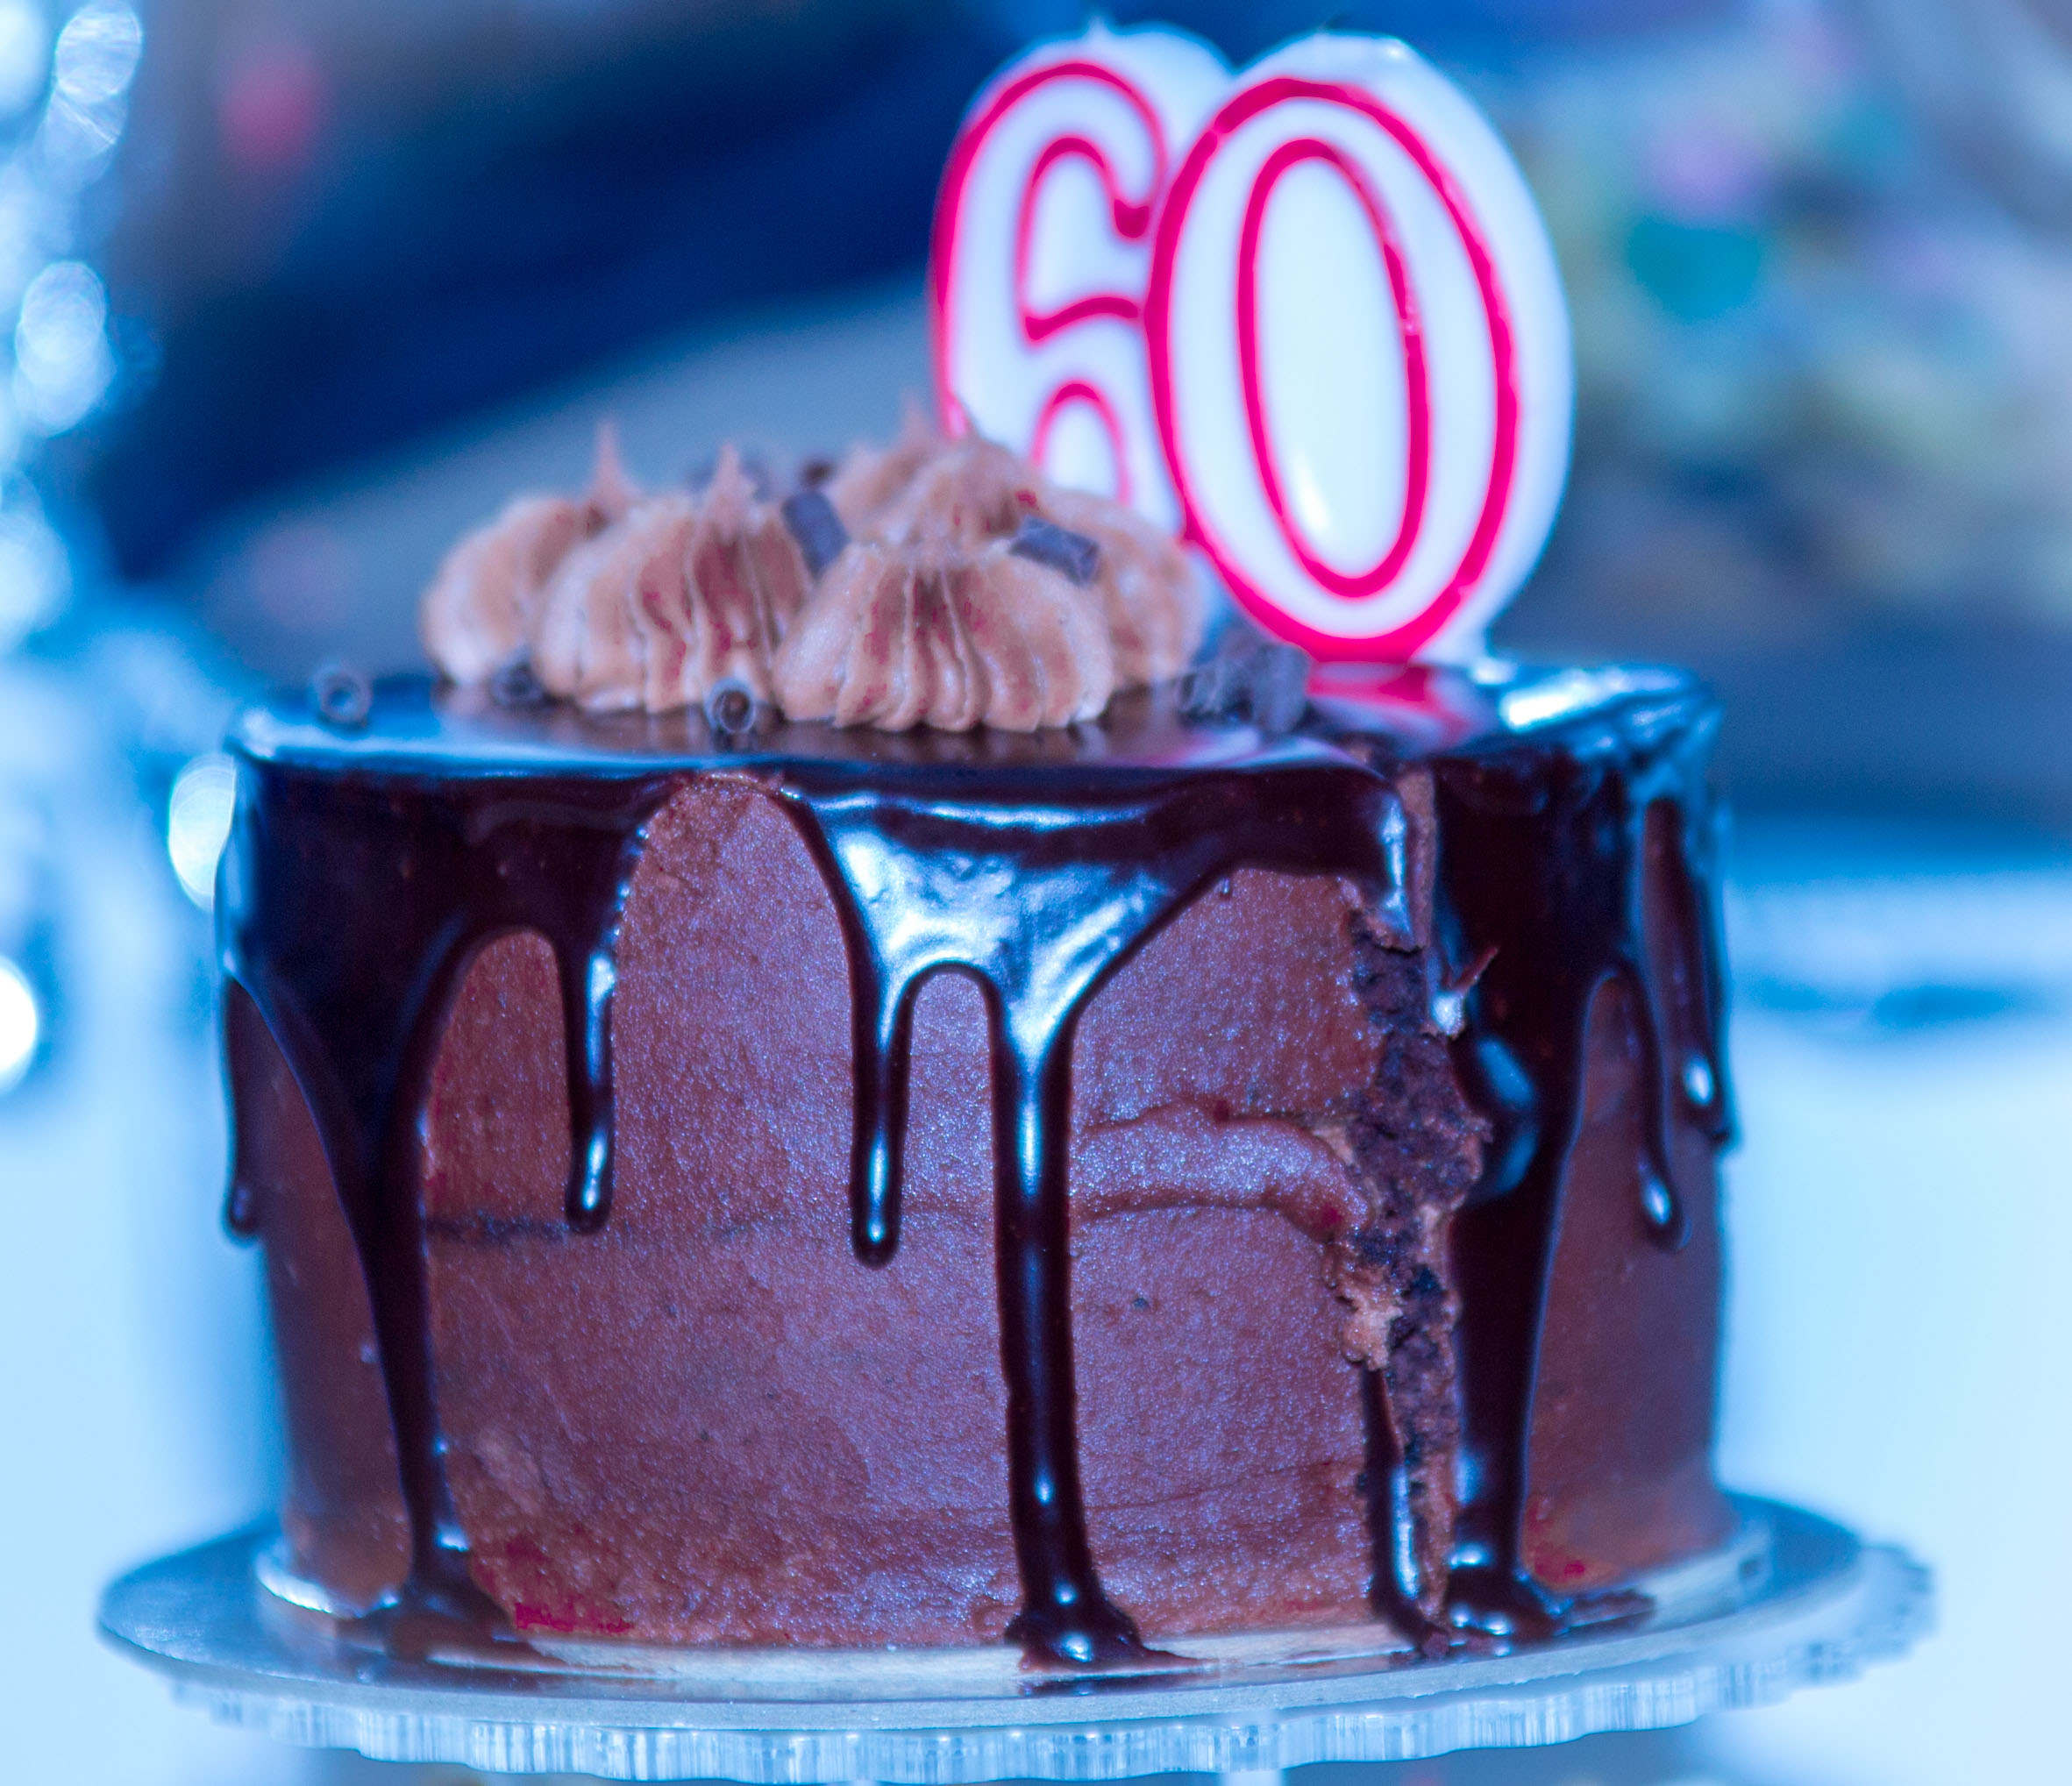 60th Birthday Celebration